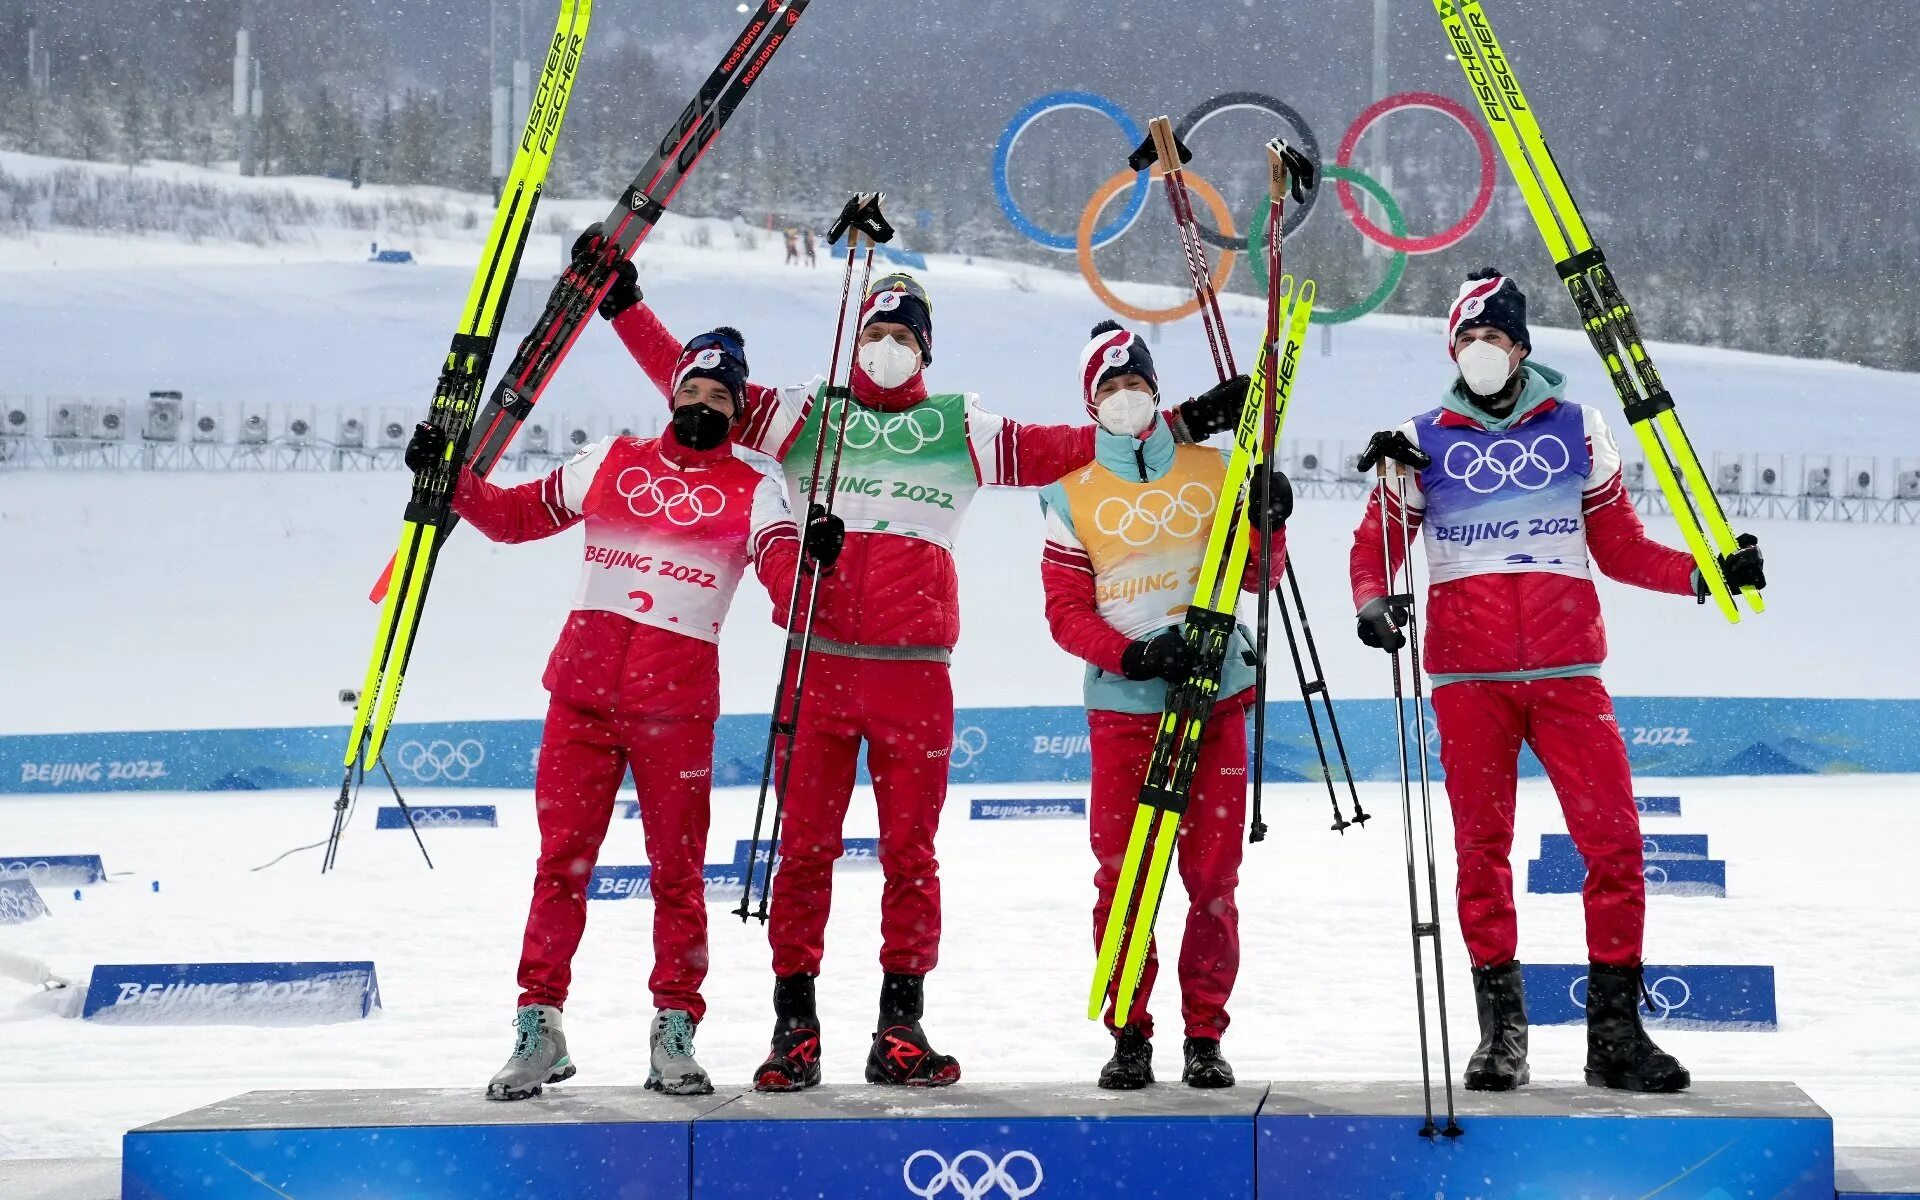 Лыжные гонки 2022 Червоткин Большунов. Лыжные гонки 2022 сборная России. Зимний день и лыжи